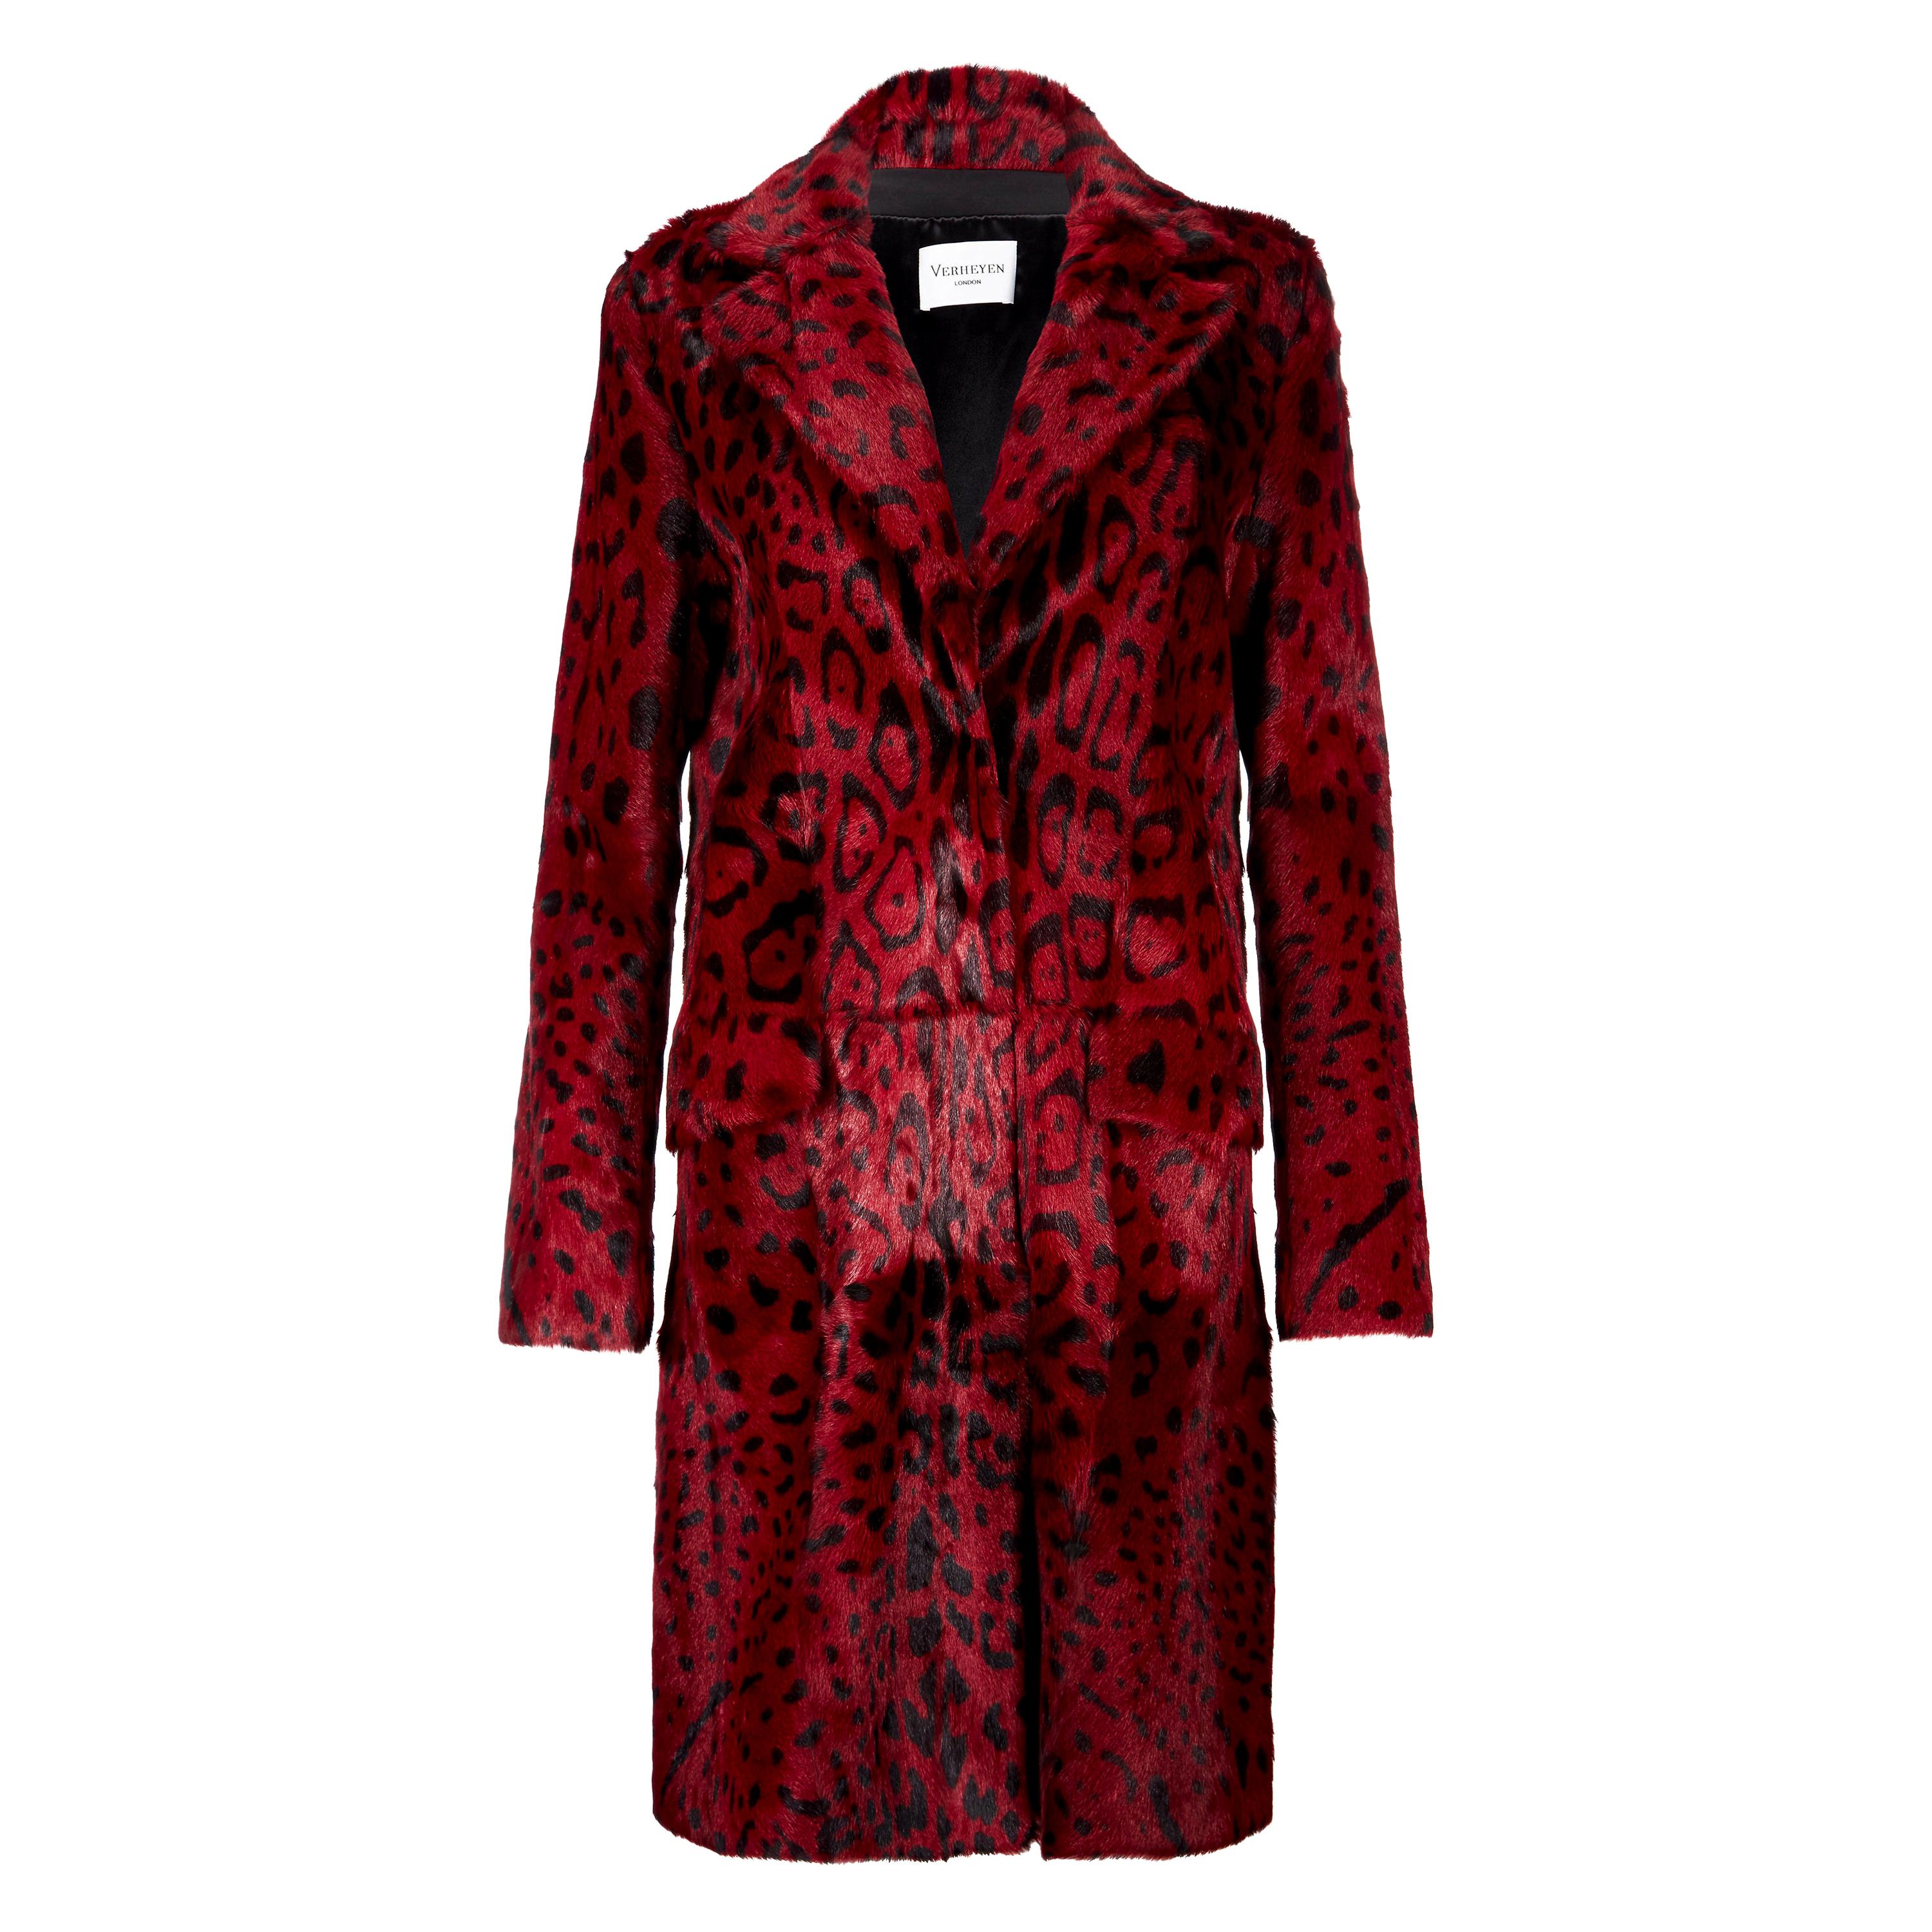 Verheyen London - Manteau imprimé léopard en fourrure de chèvre rouge rubis GB 10 - Neuf 